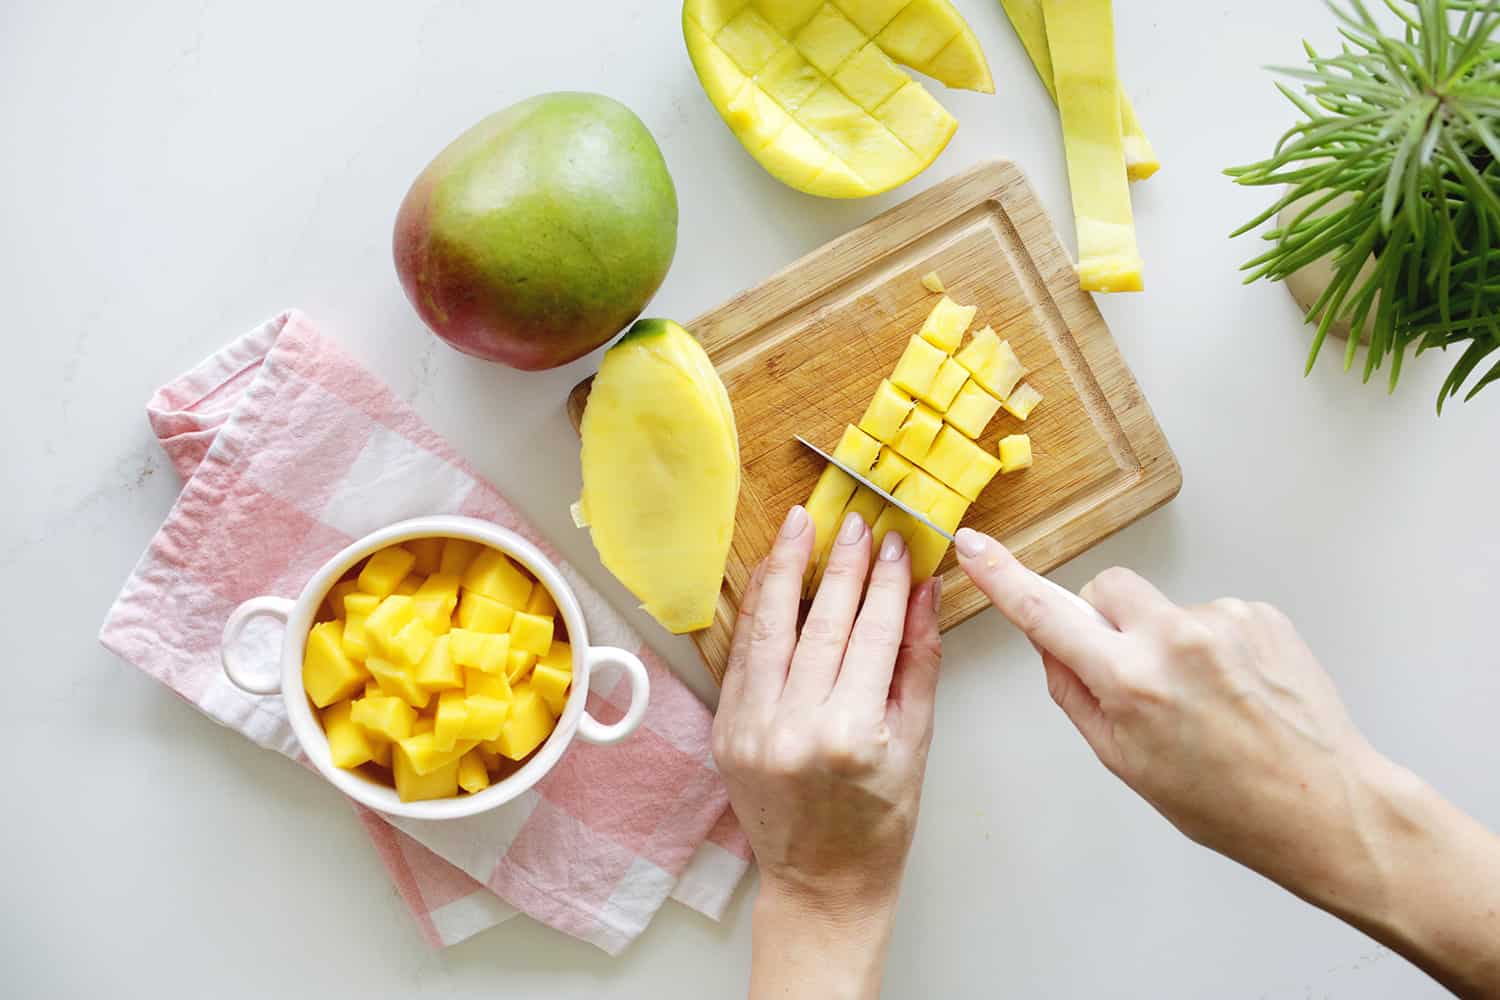 Dicing mango slices